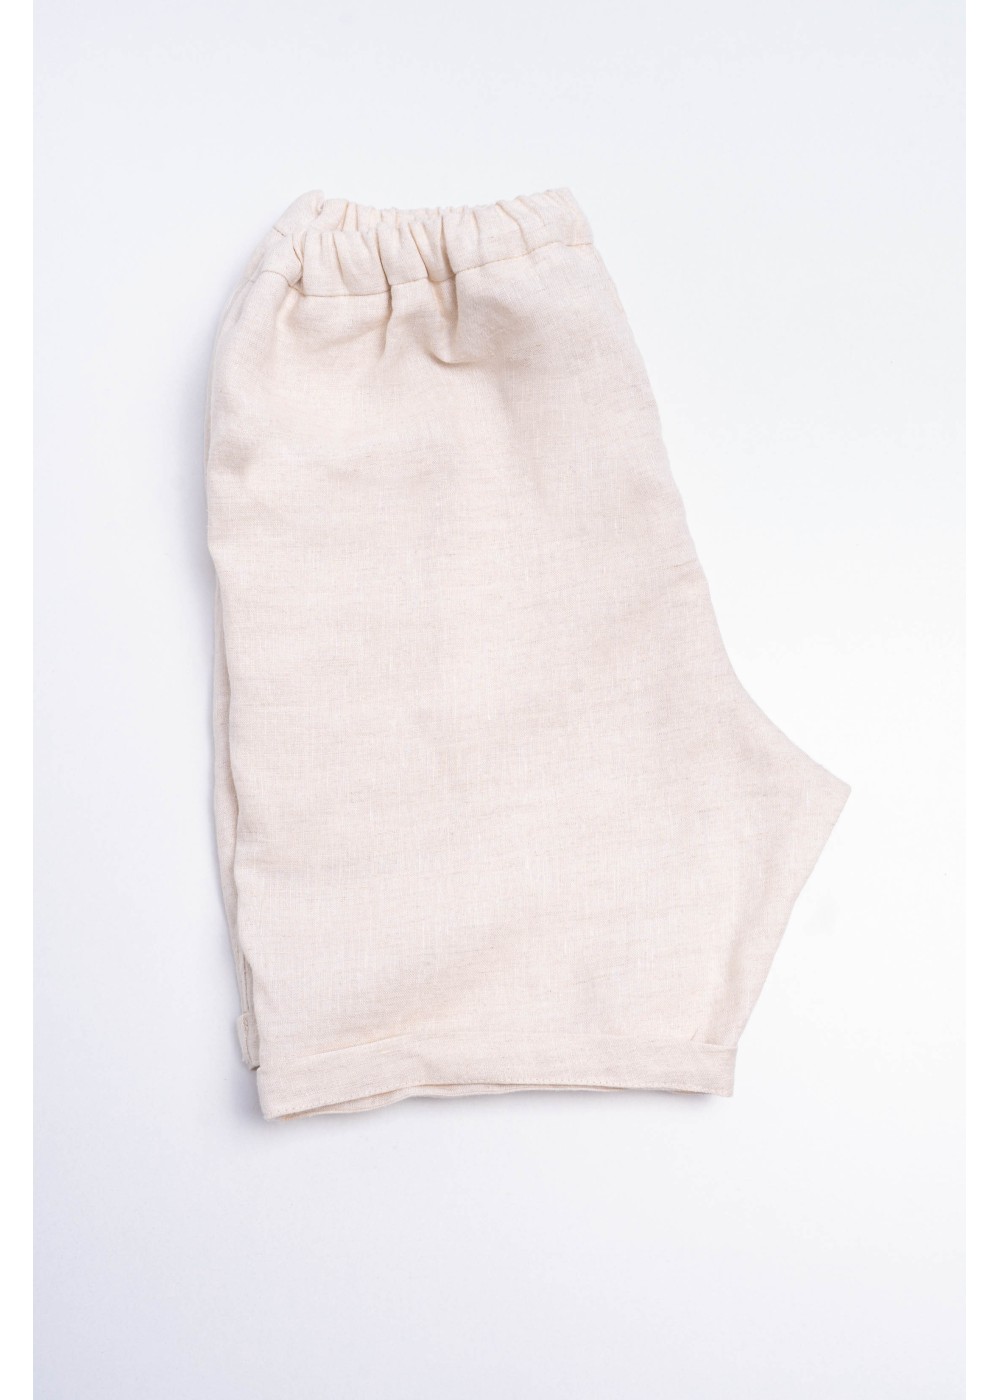 ARI Shorts, linen shorts, elastic waistband, beige